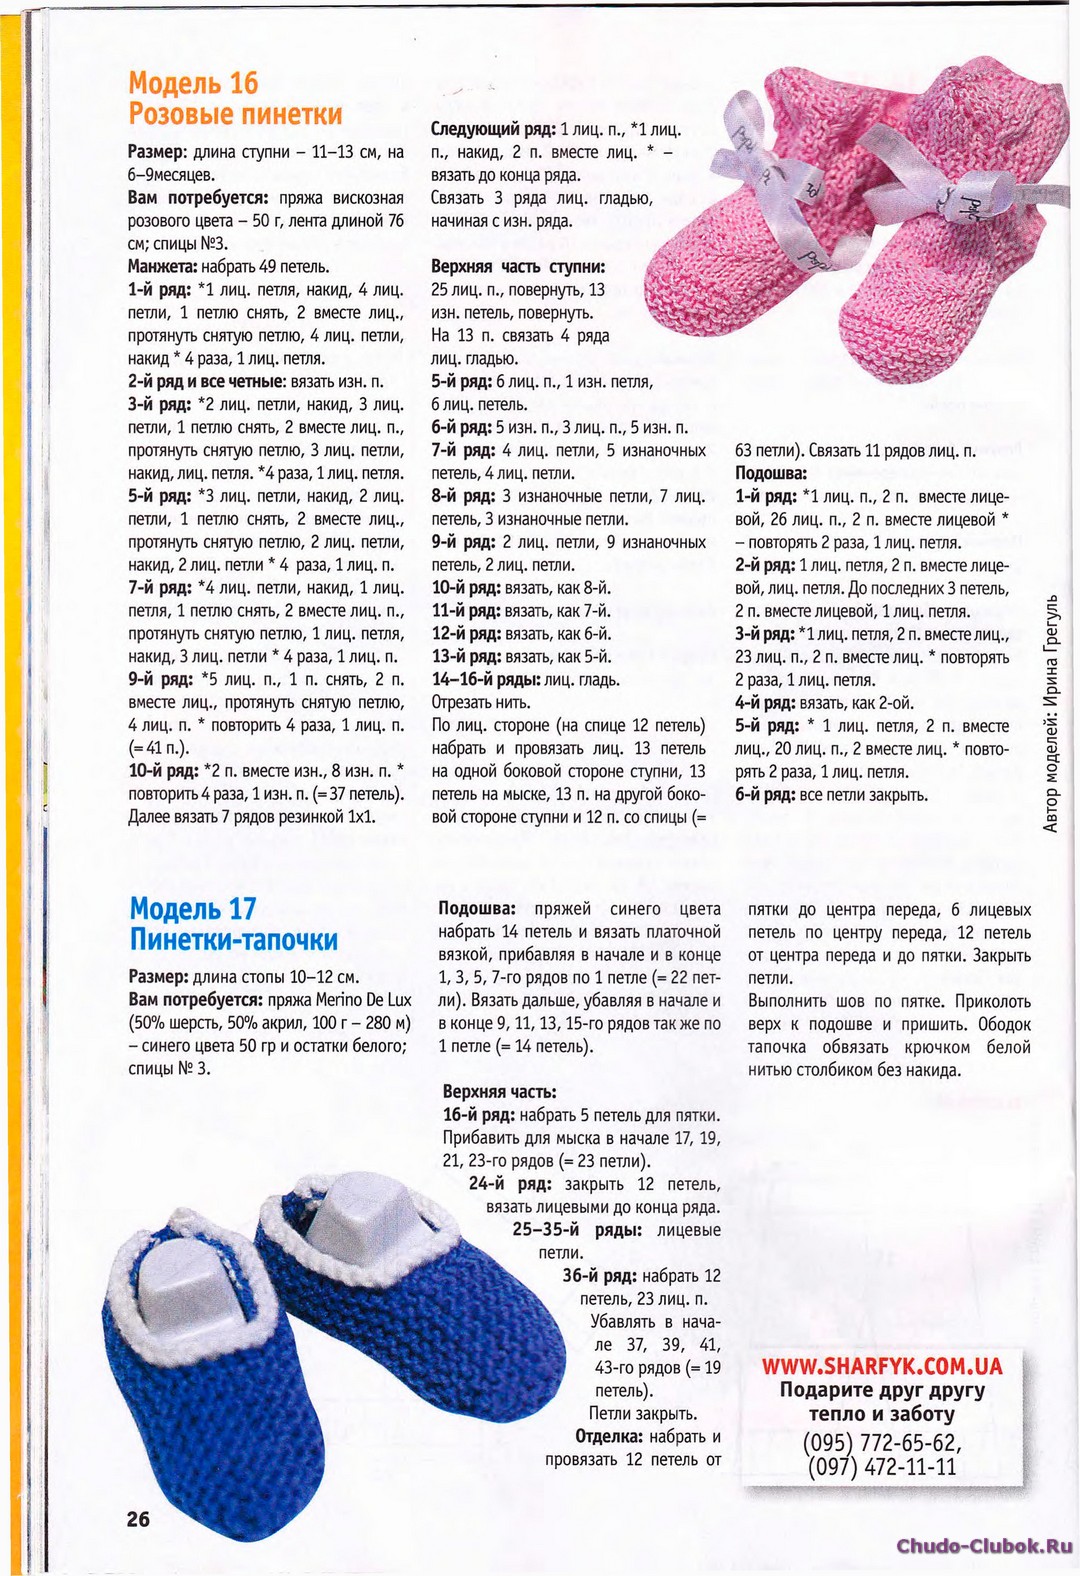 Носочки новорожденным схема. Пинетки и носочки для новорожденных спицами с описанием. Вязание носочки для новорожденных со схемами и описанием. Как вязать носочки для новорожденных спицами для начинающих. Вязание пинеток на двух спицах для начинающих пошагово с описанием.